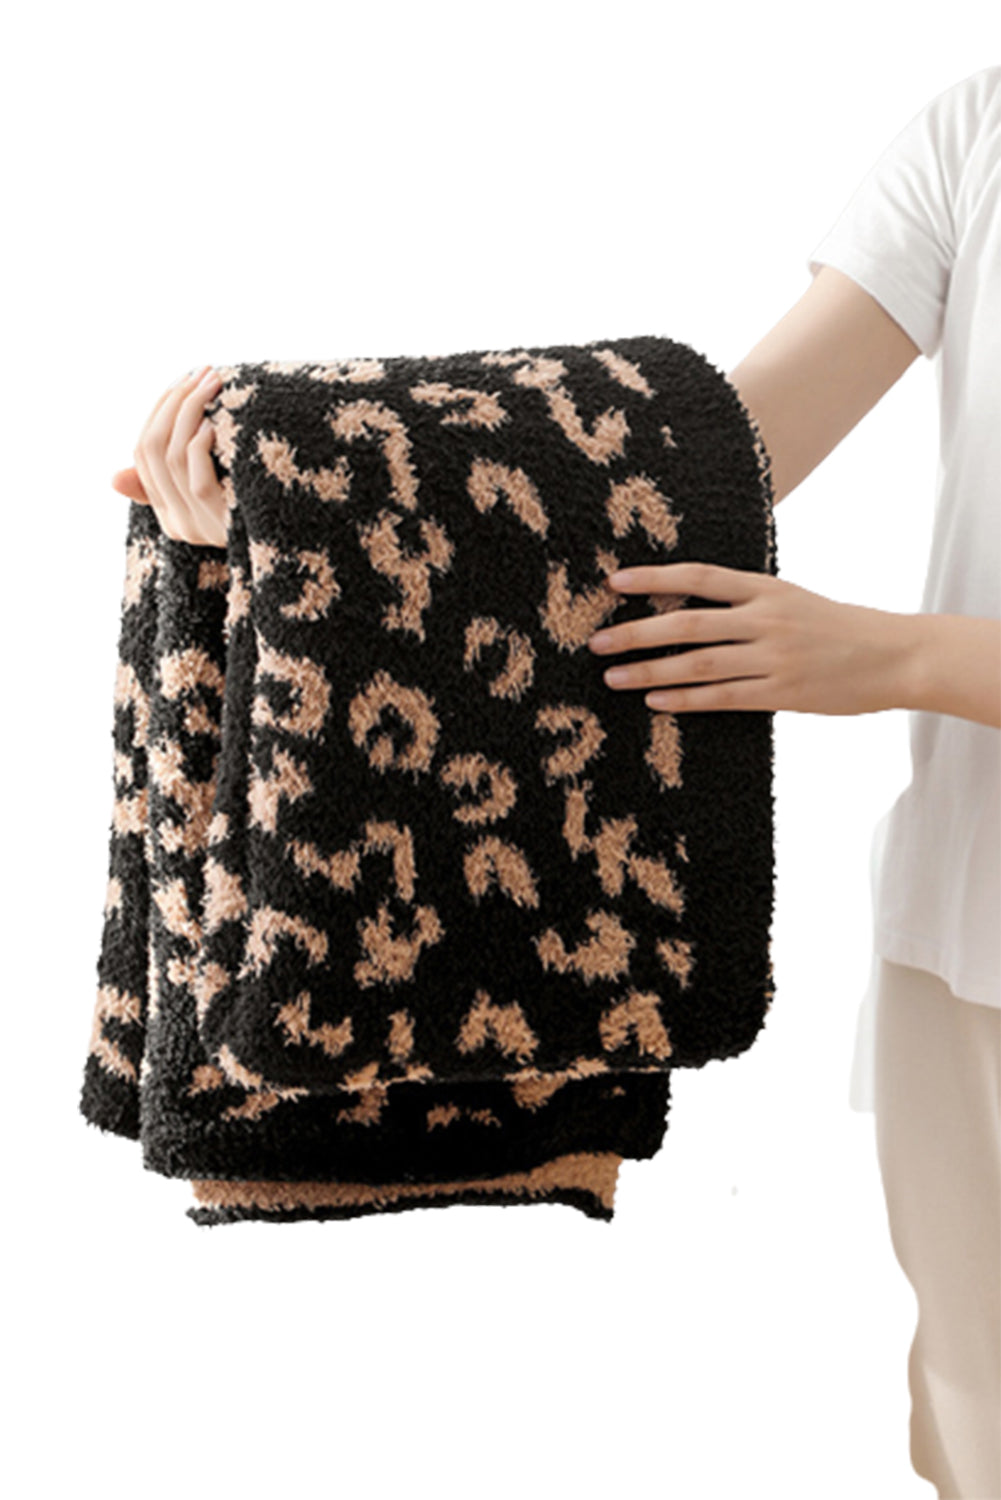 Black Leopard Grain Knitting Blanket 127*152CM